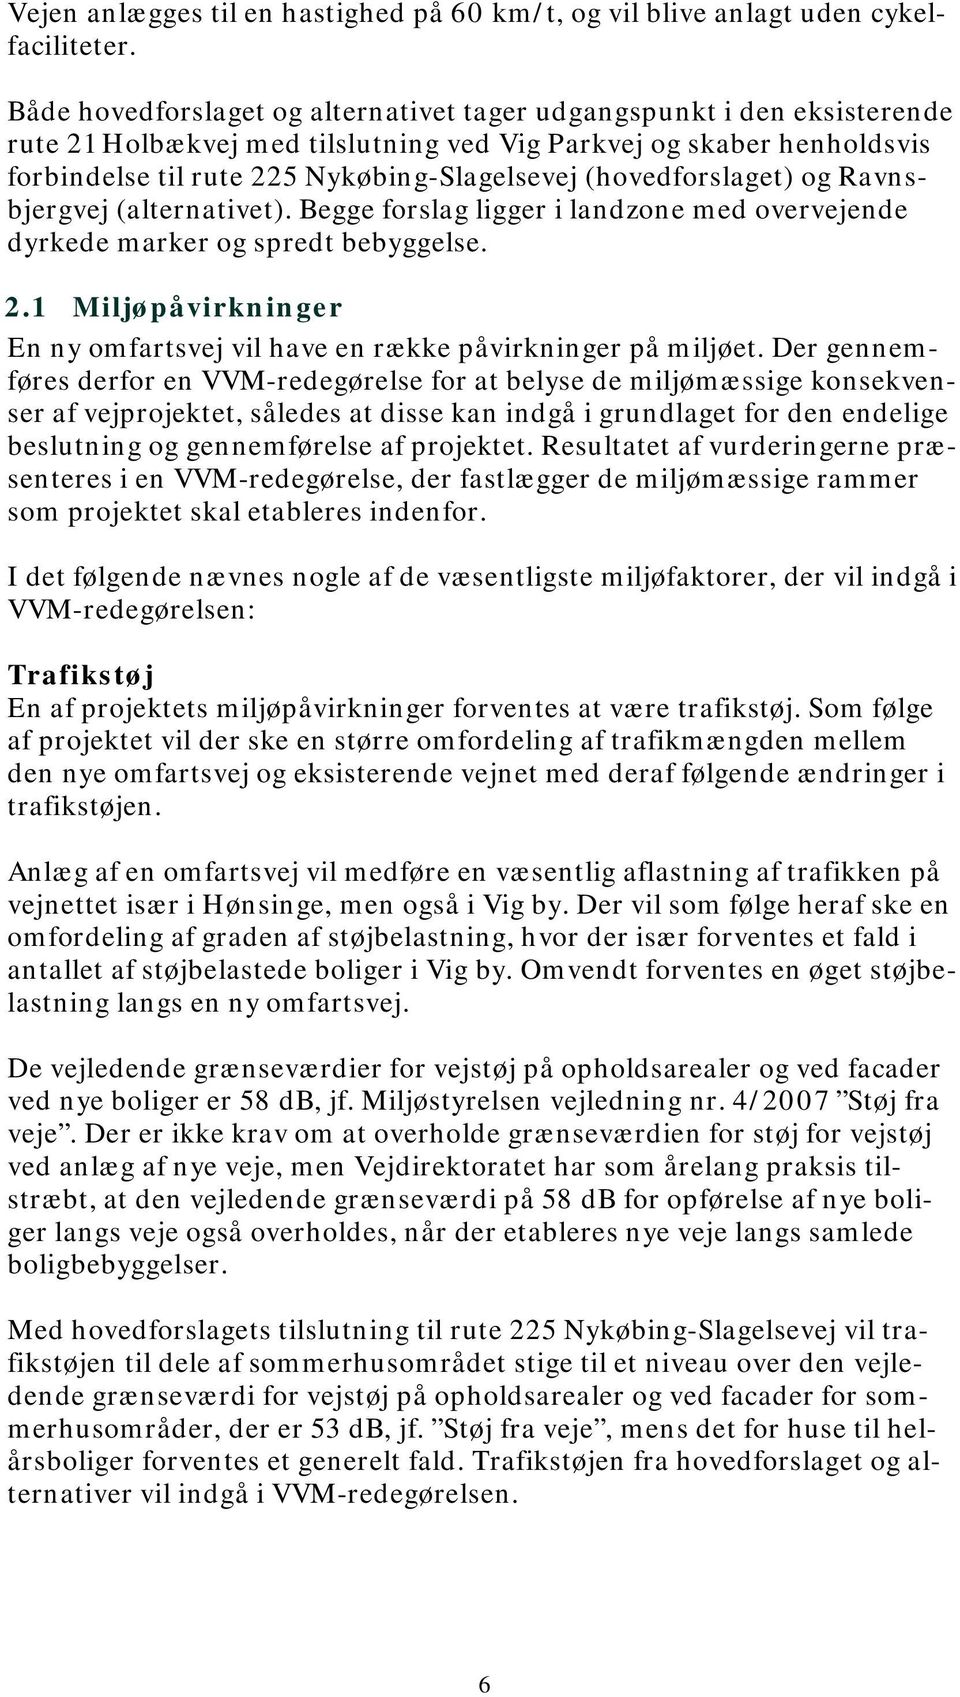 (hovedforslaget) og Ravnsbjergvej (alternativet). Begge forslag ligger i landzone med overvejende dyrkede marker og spredt bebyggelse. 2.